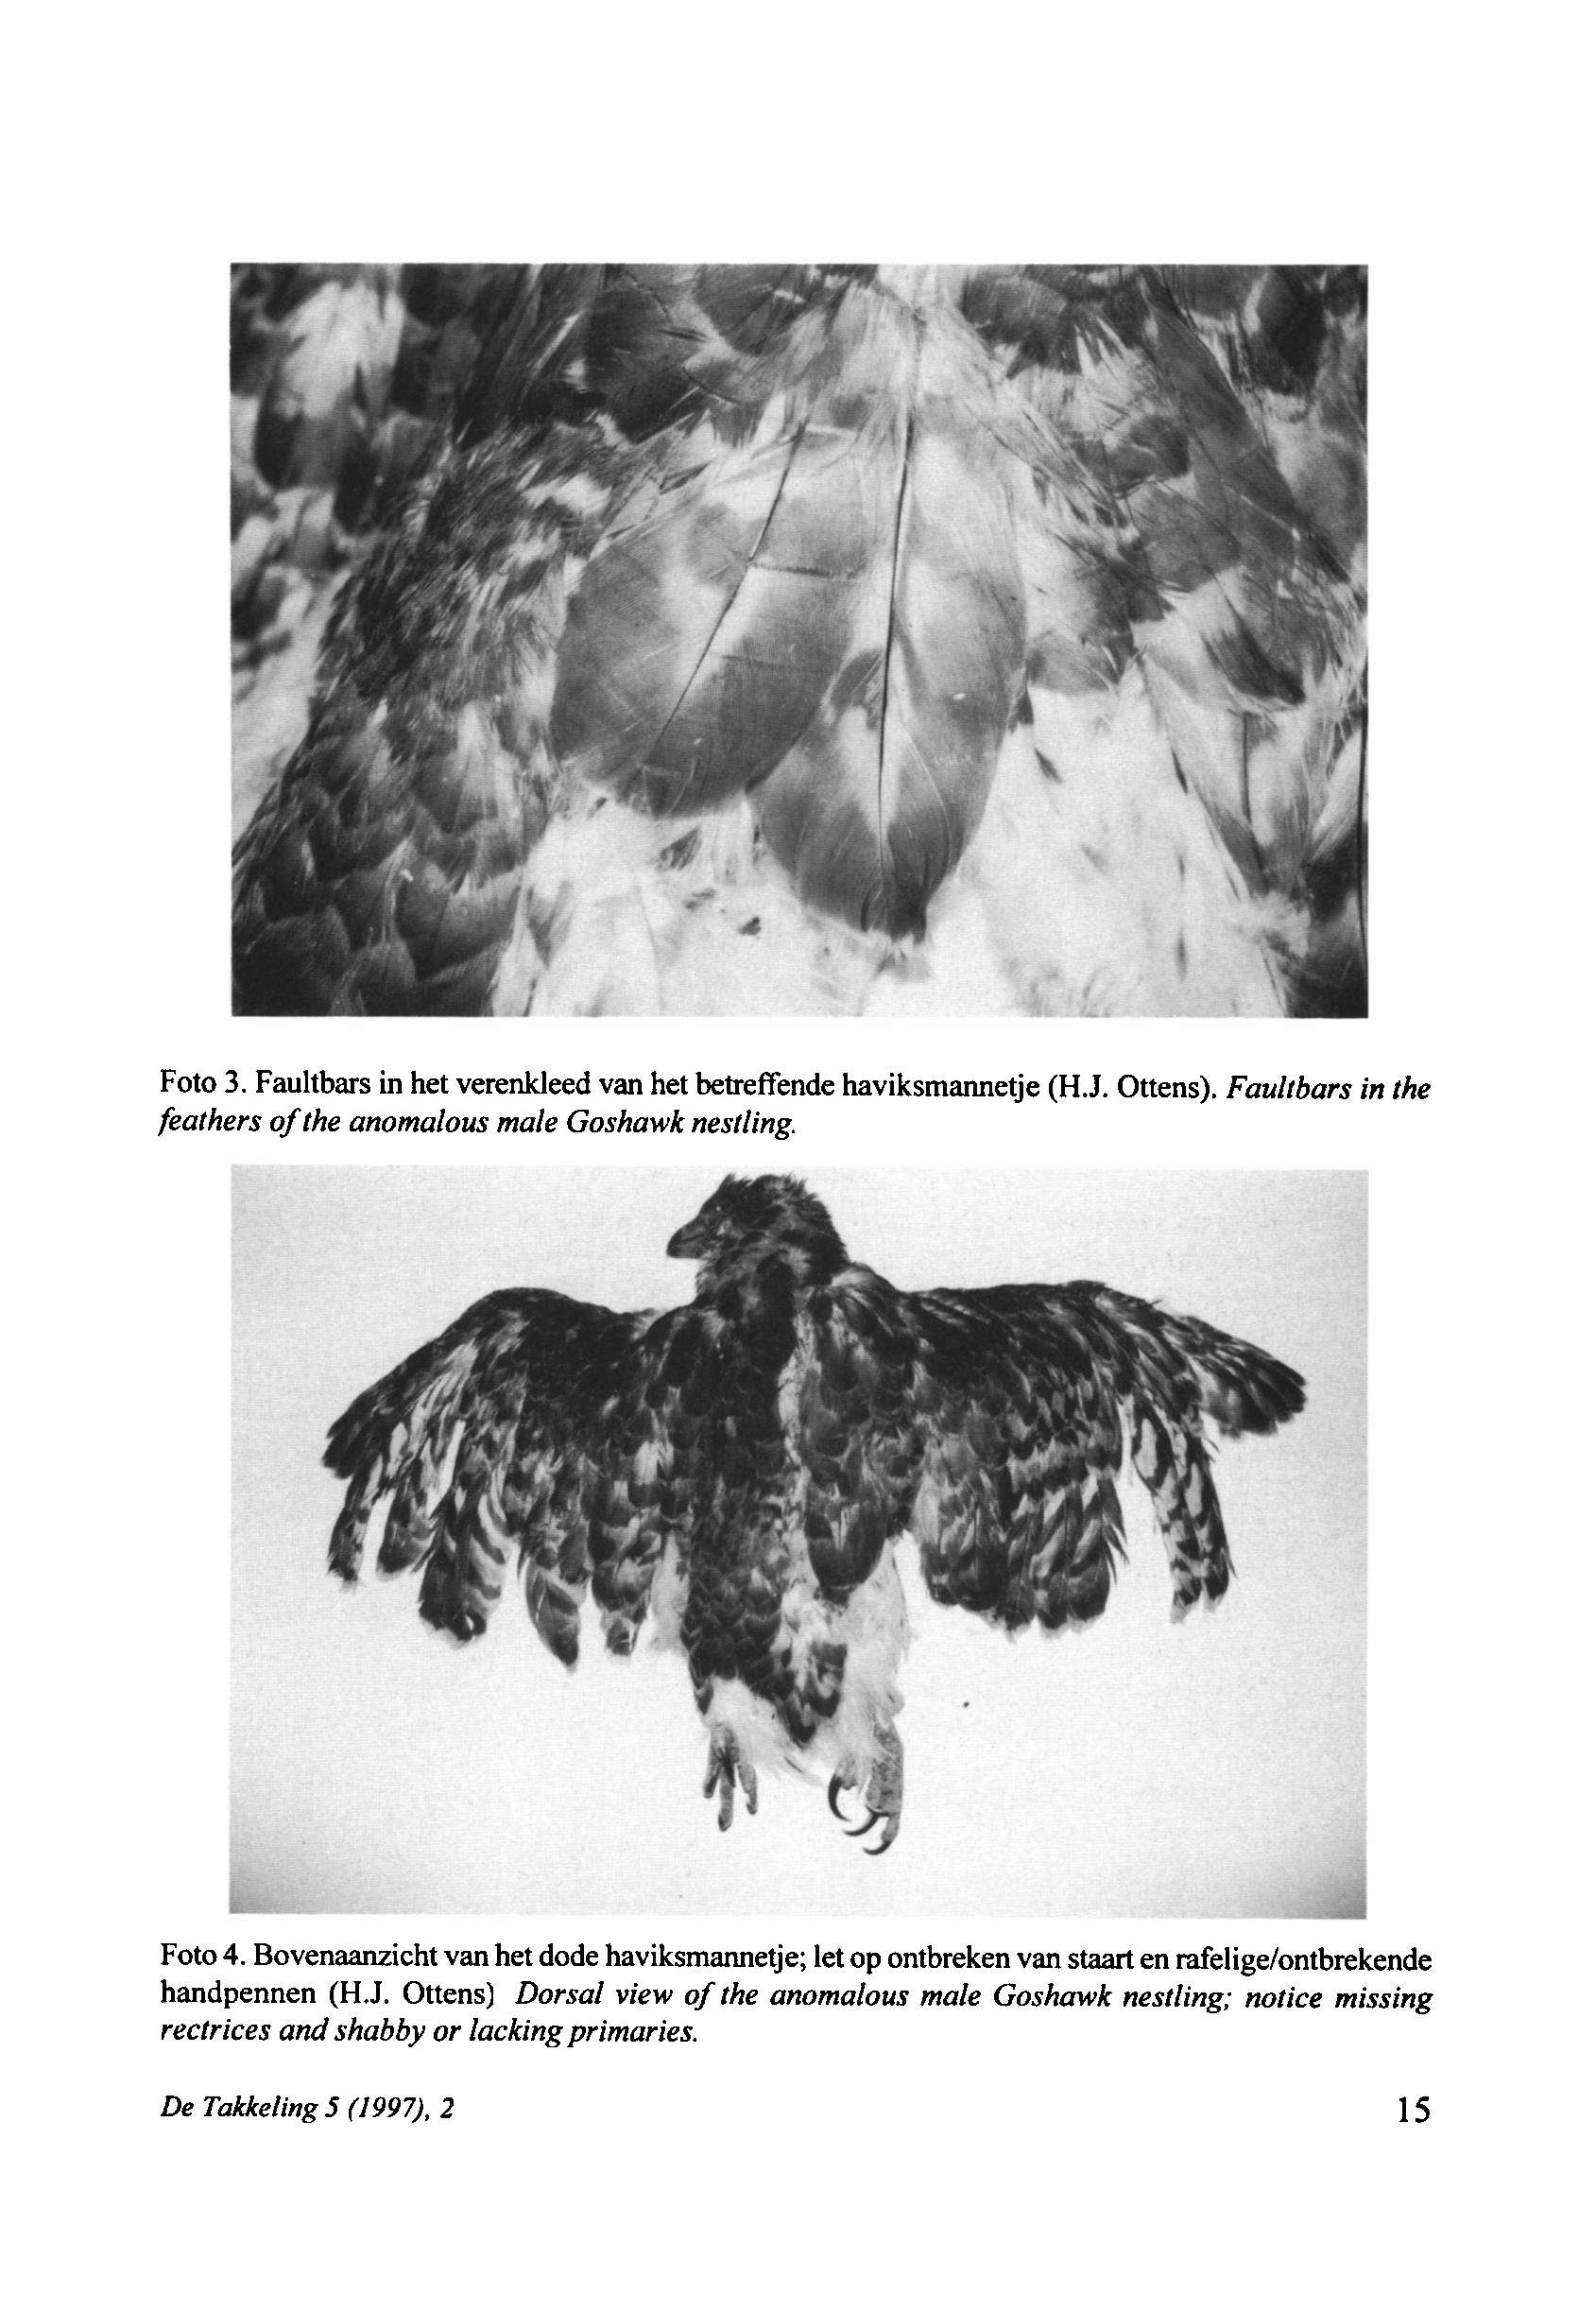 De Takkeling 5 (1997), 2 15 Foto 3. Faultbars in het verenkleed van het betreffende haviksmannetje (H.J. Ottens). Fauhbars in the feathers ofthe anomalous male Goshawk nestling. Foto 4.